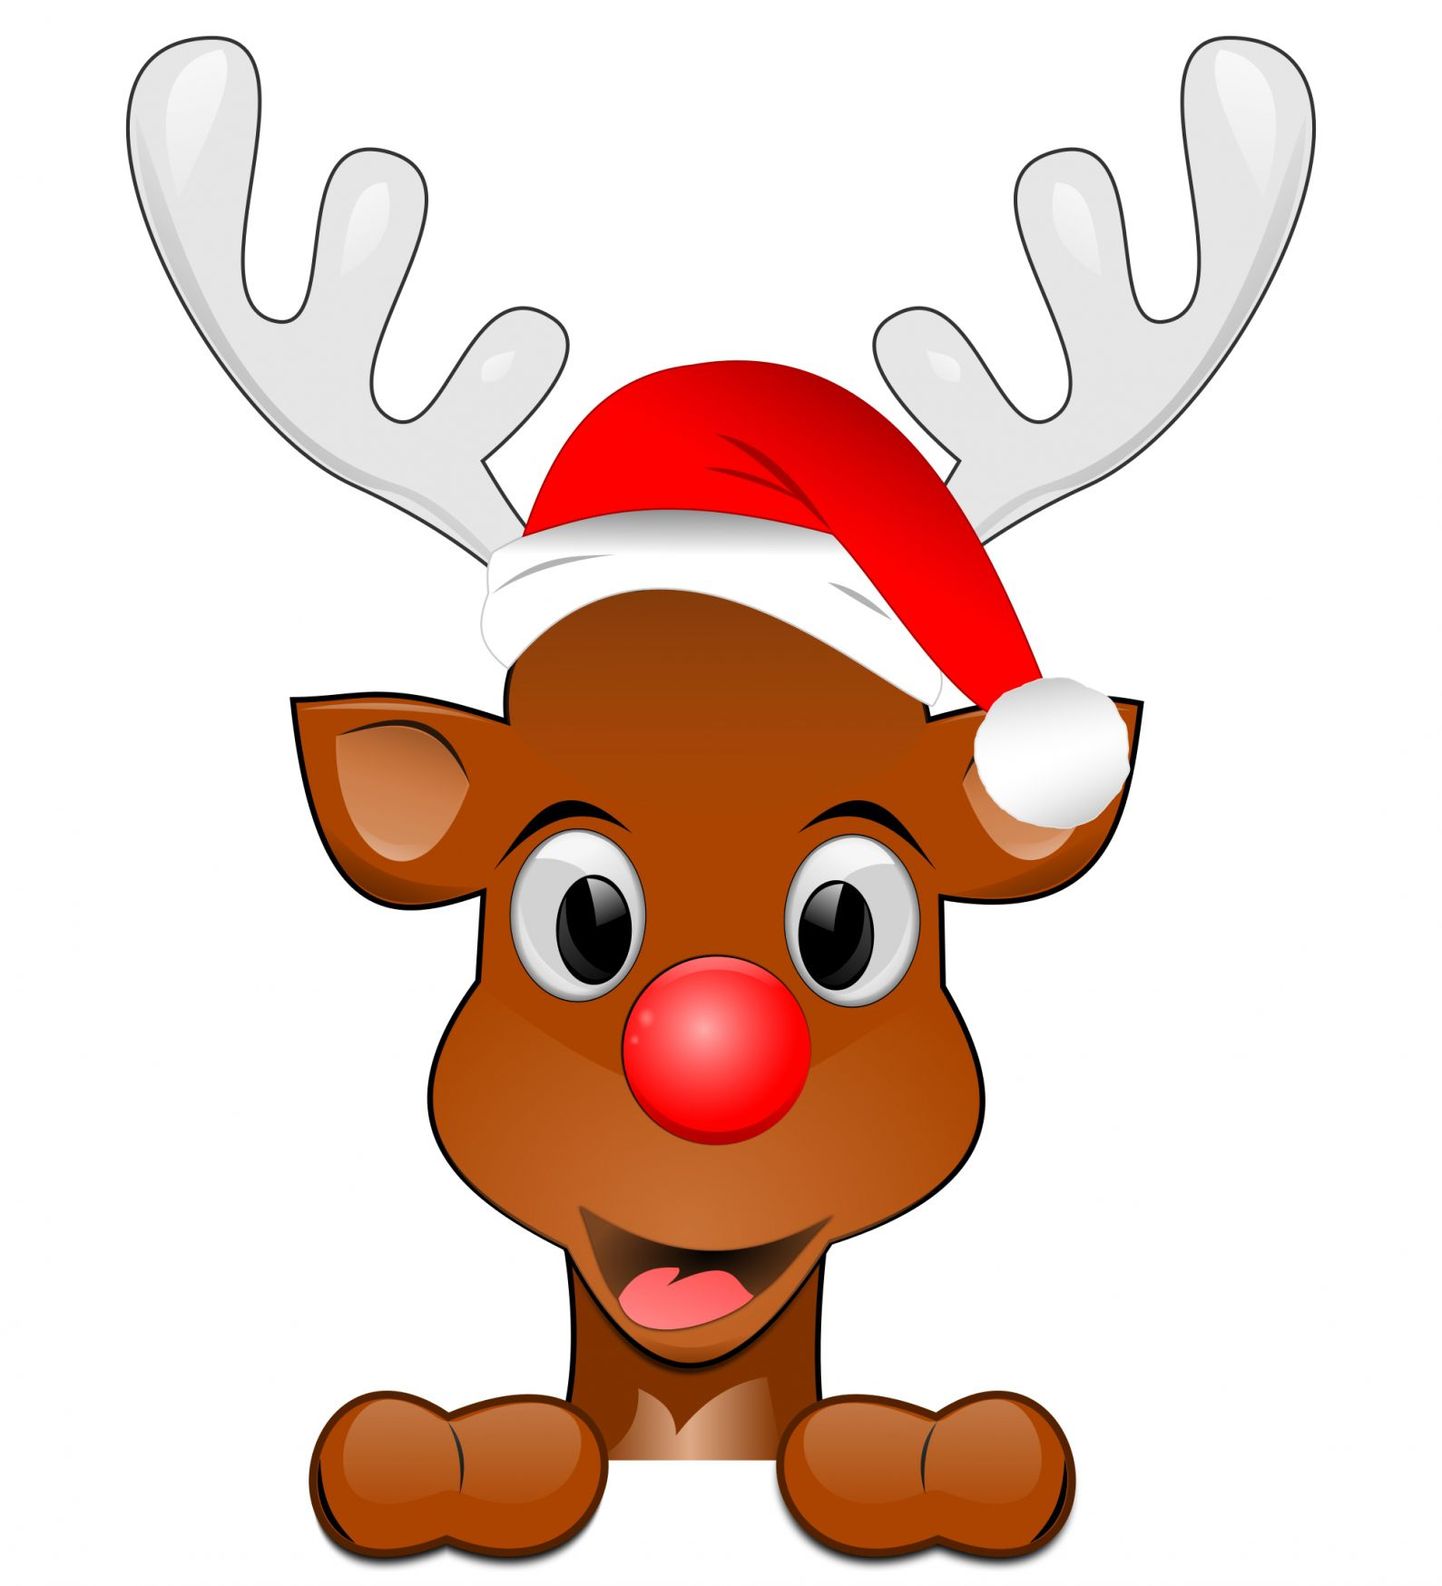 Moodsate jõulude keskne tegelane on silmatorkavalt suure ja punase nina ning uhkete sarvedega põhjapõder Rudolf.